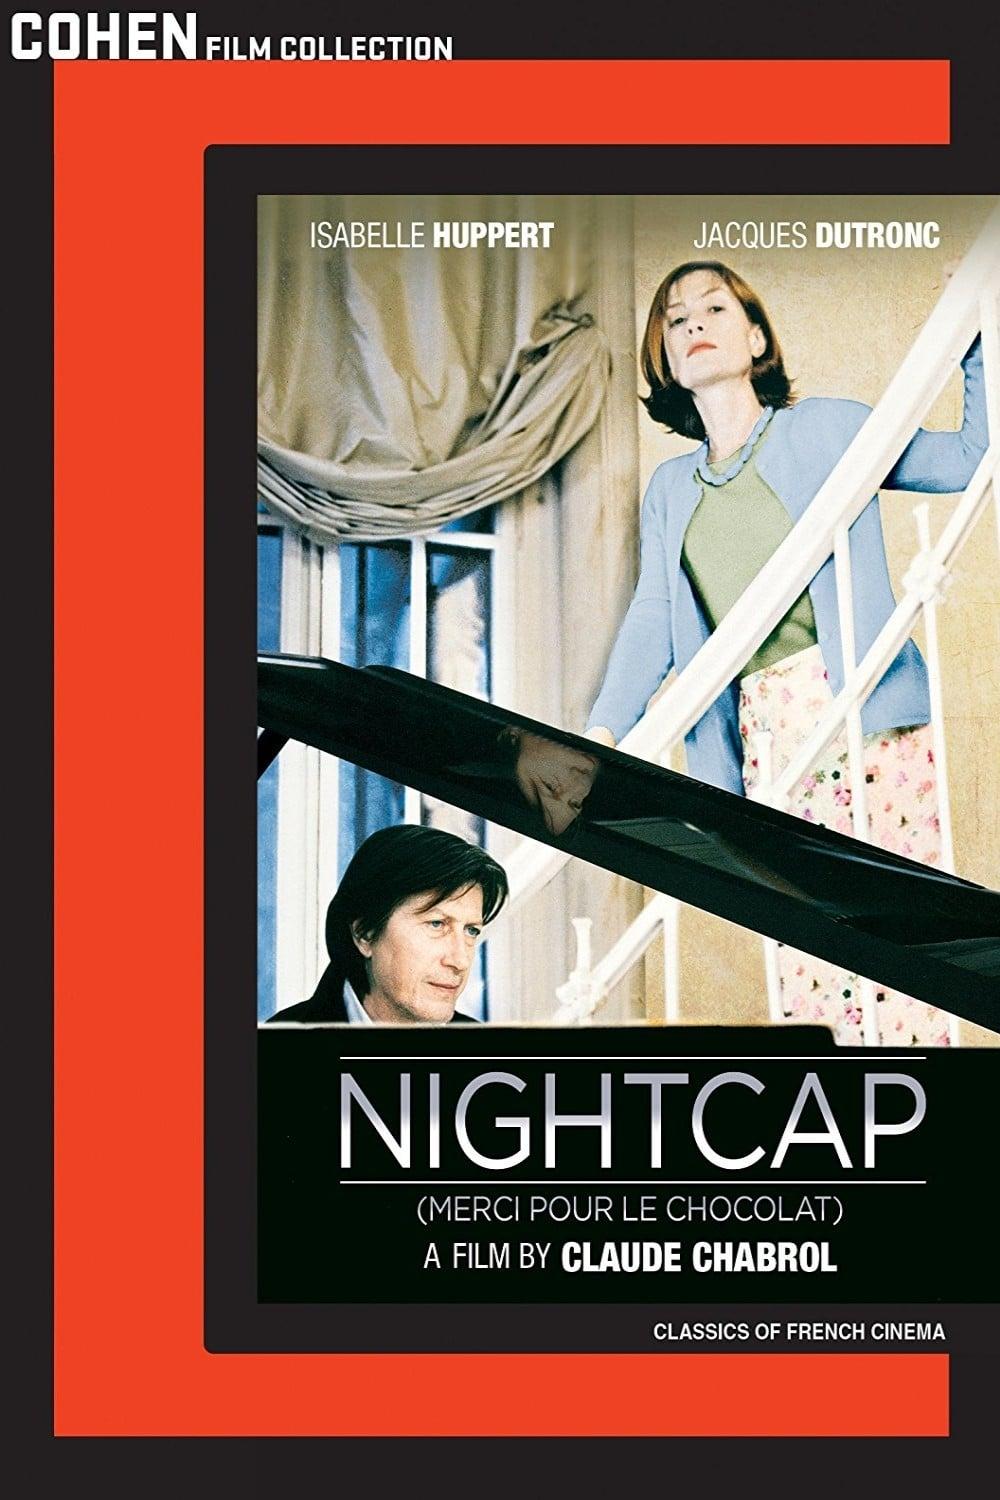 Nightcap poster